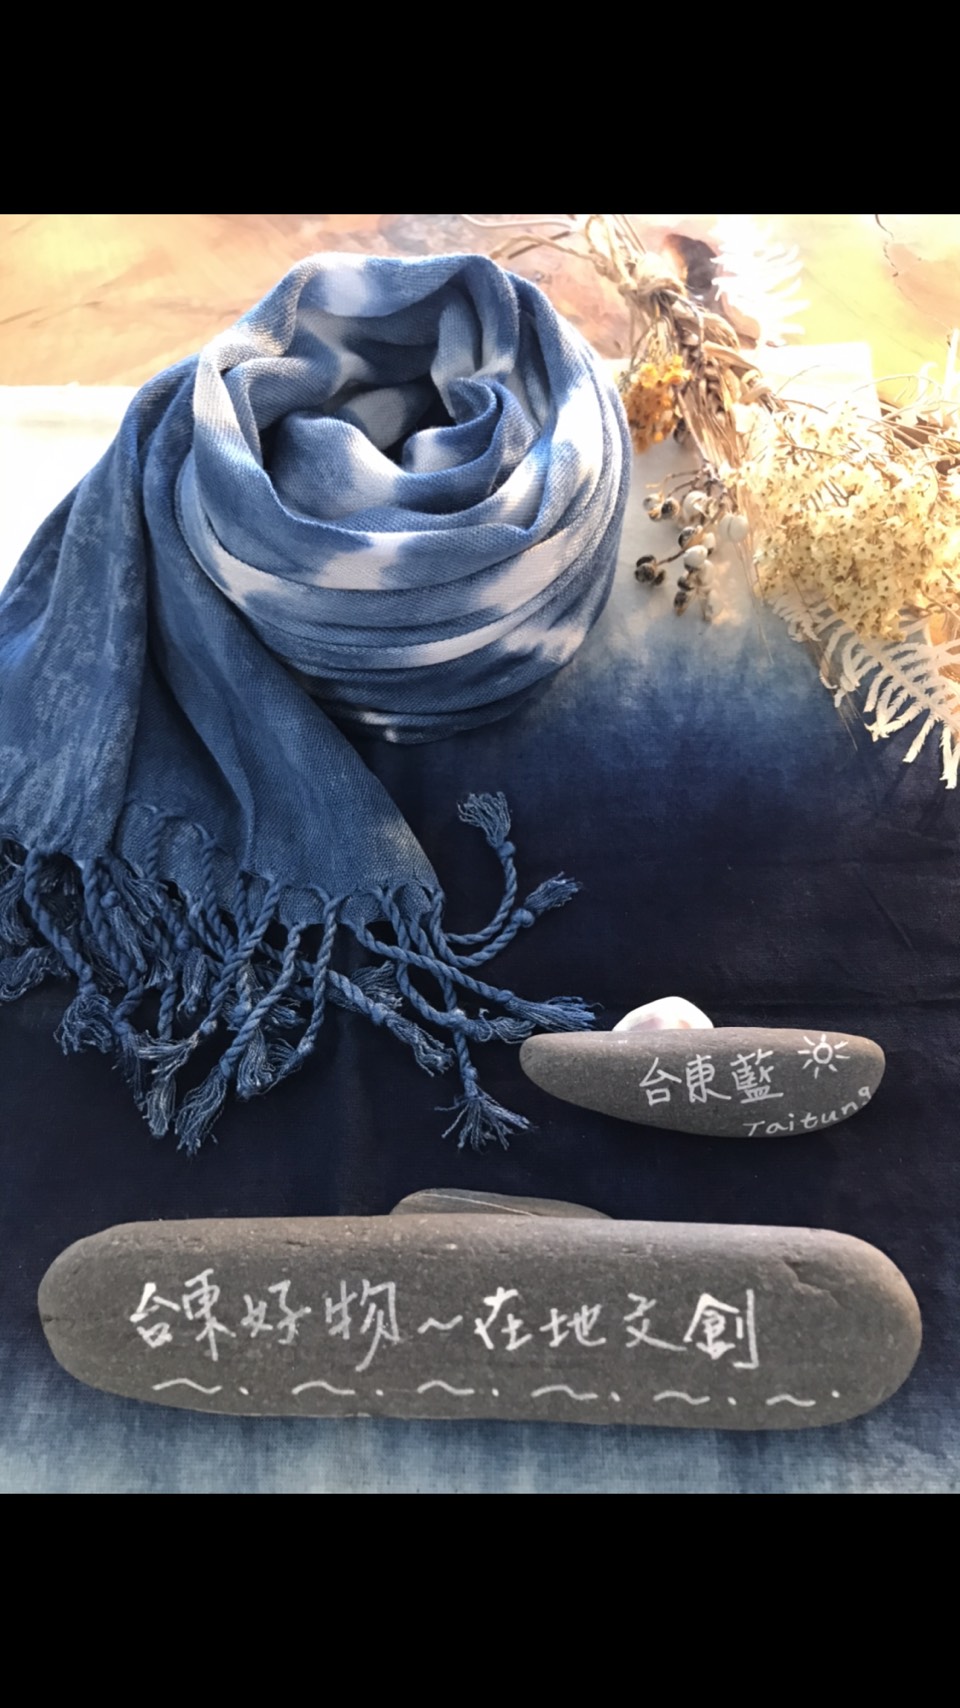 【手作】藍染圍巾DIY體驗活動